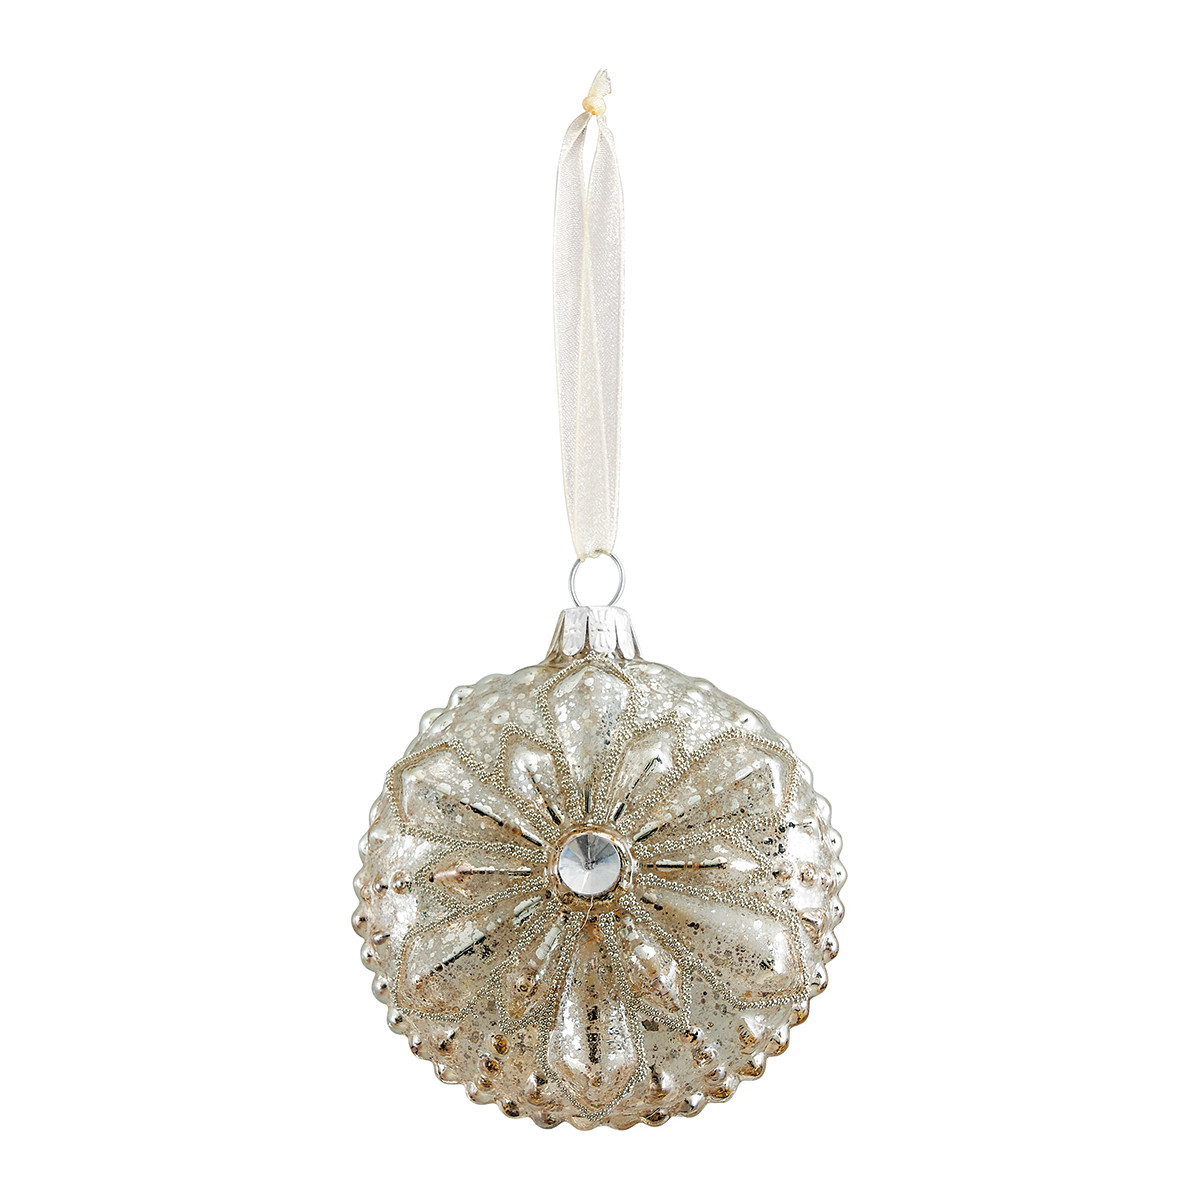 Adorno navideño flor cristal mercurizado – Modelo pequeño Navidad Mahilde M